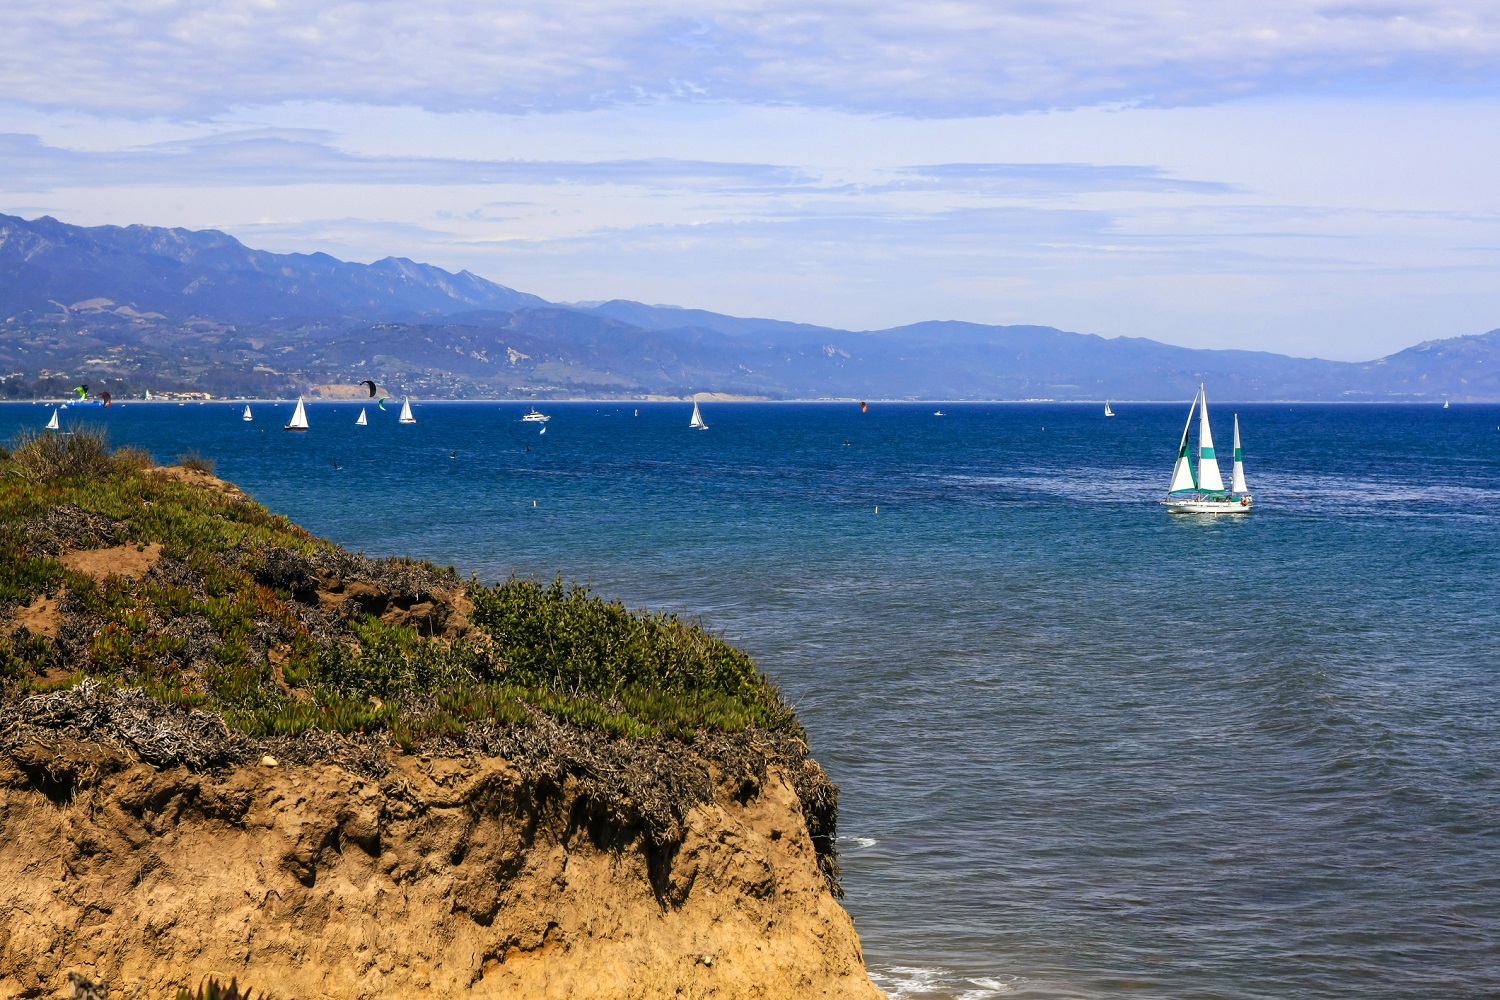 Santa Barbara's rocky shoreline overlooking the Pacific Ocean